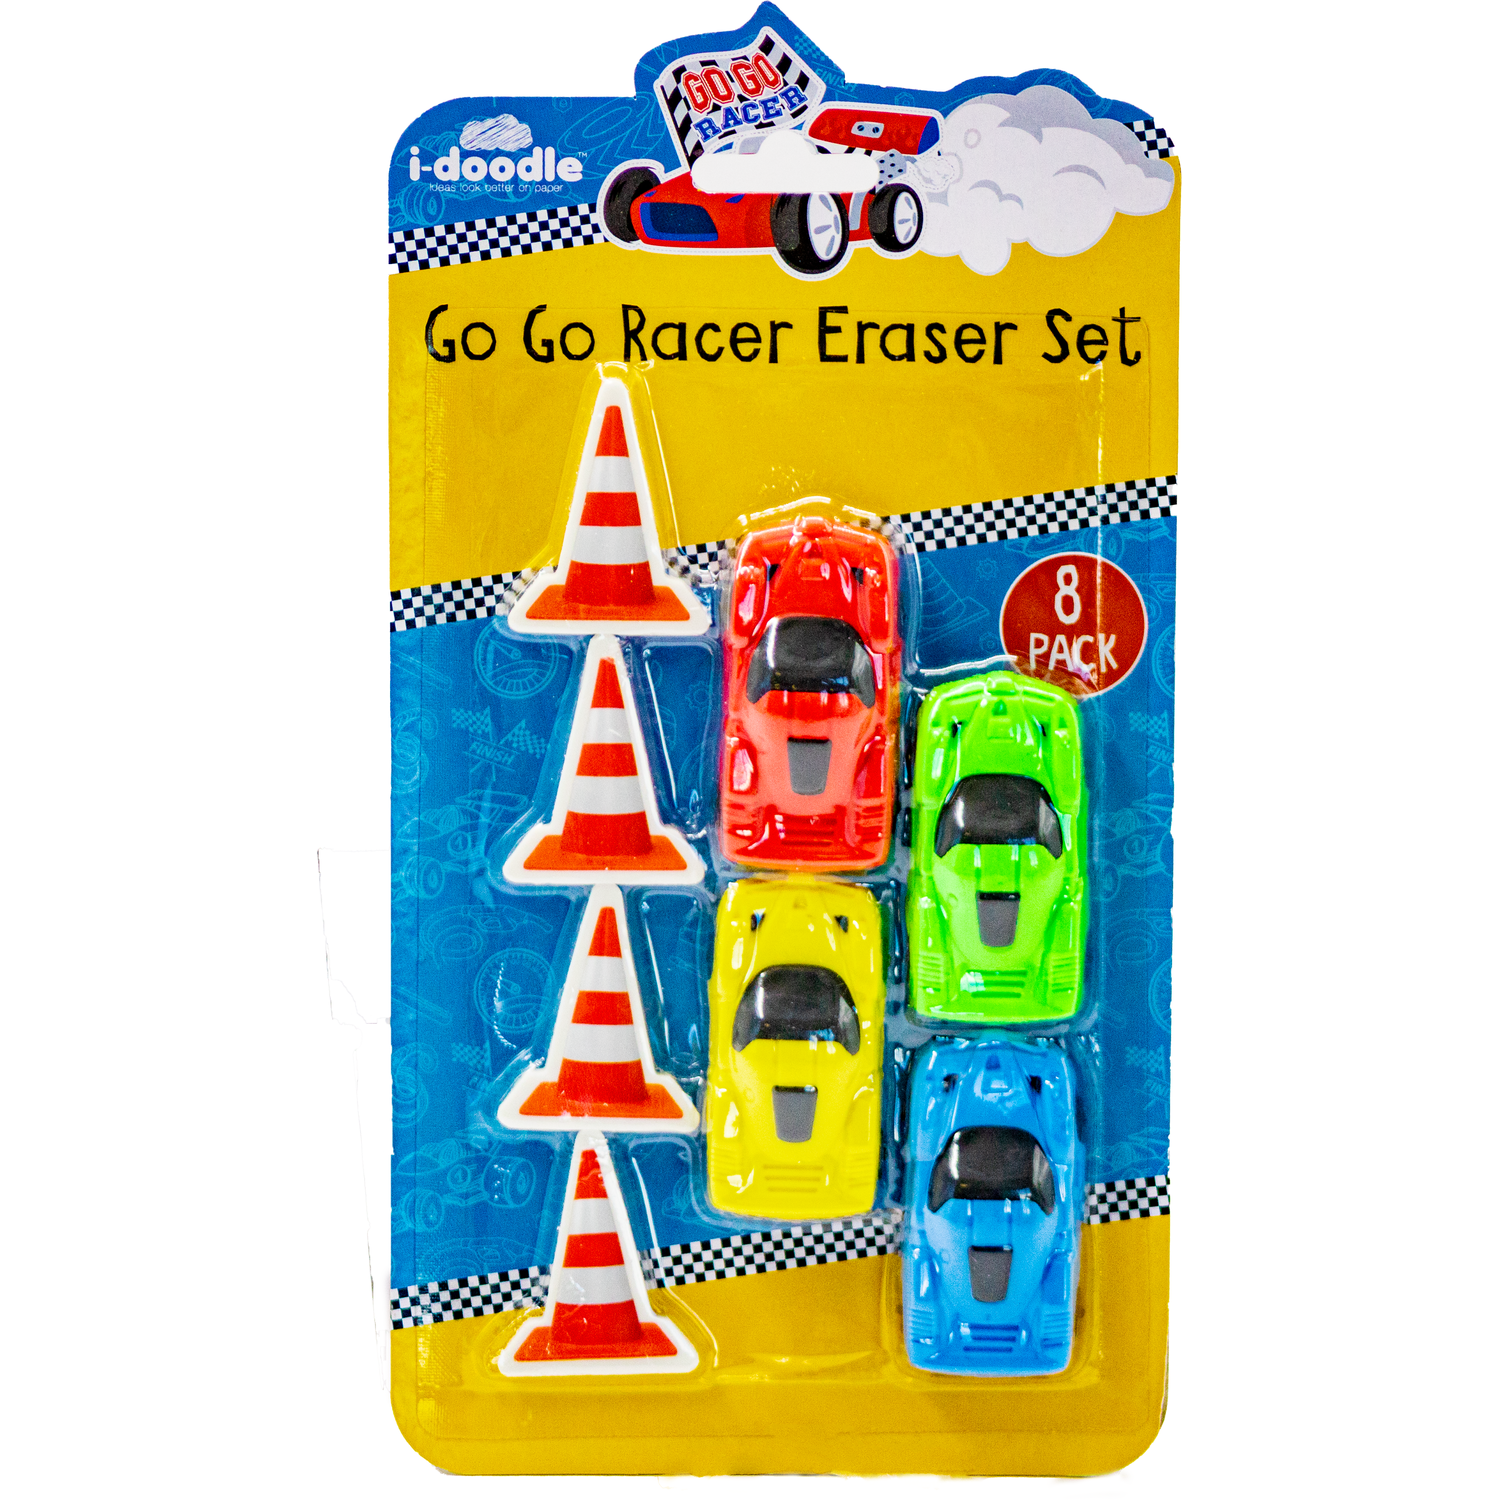 Go Go Racer Eraser Set Image